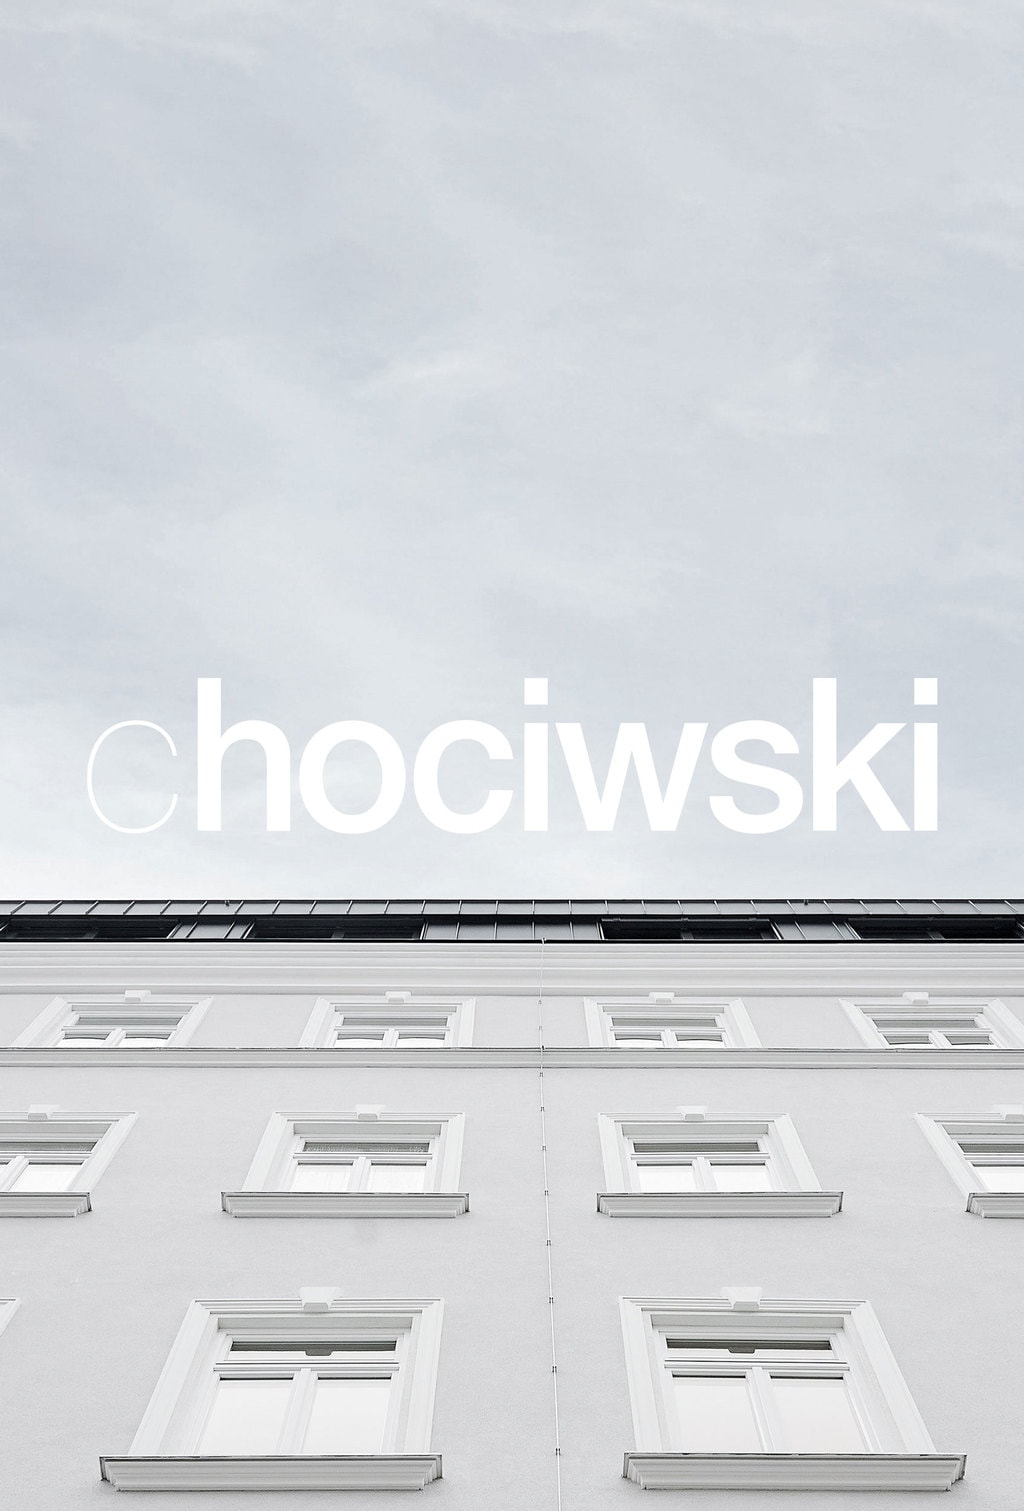 chociwski-logo-architektur_12